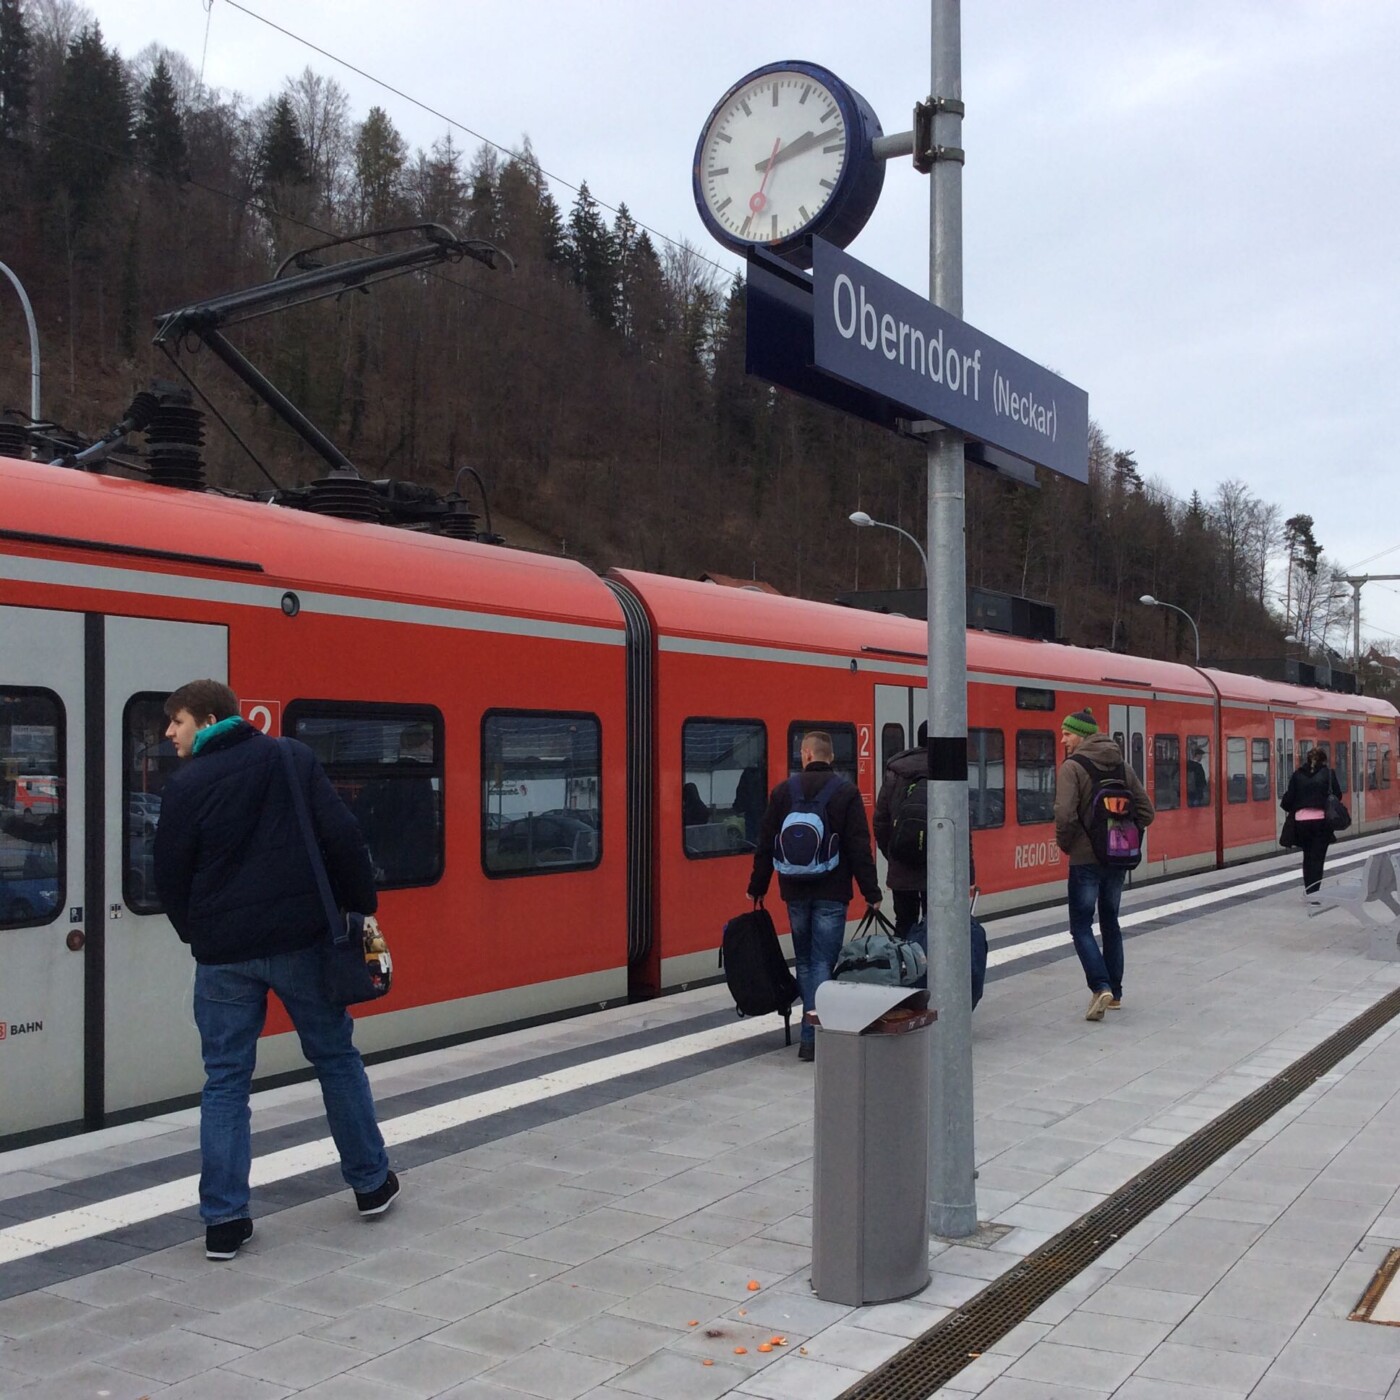 20 Jahre Vertrag von Lugano: Gäubahn jetzt endlich aufgleisen!